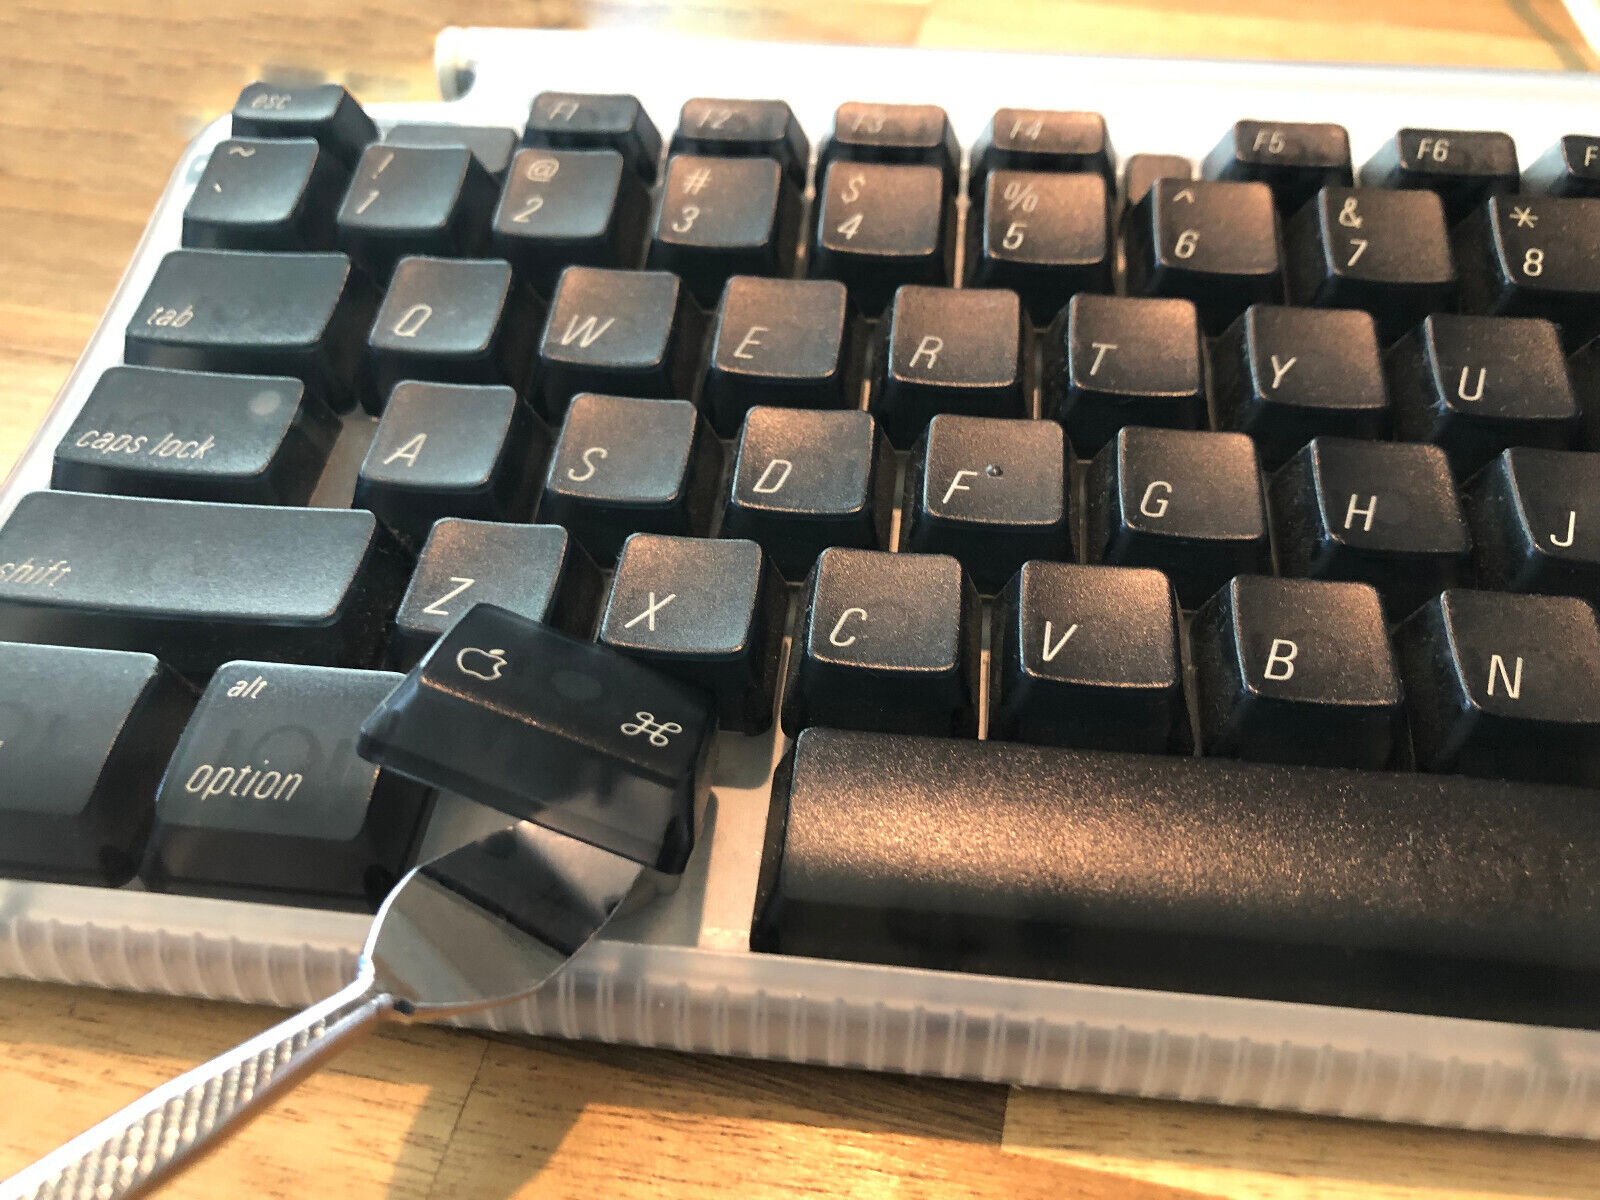 Keycap Replacement Kit - For Apple M2452 Vintage iMac Keyboard - Keys Ship Free